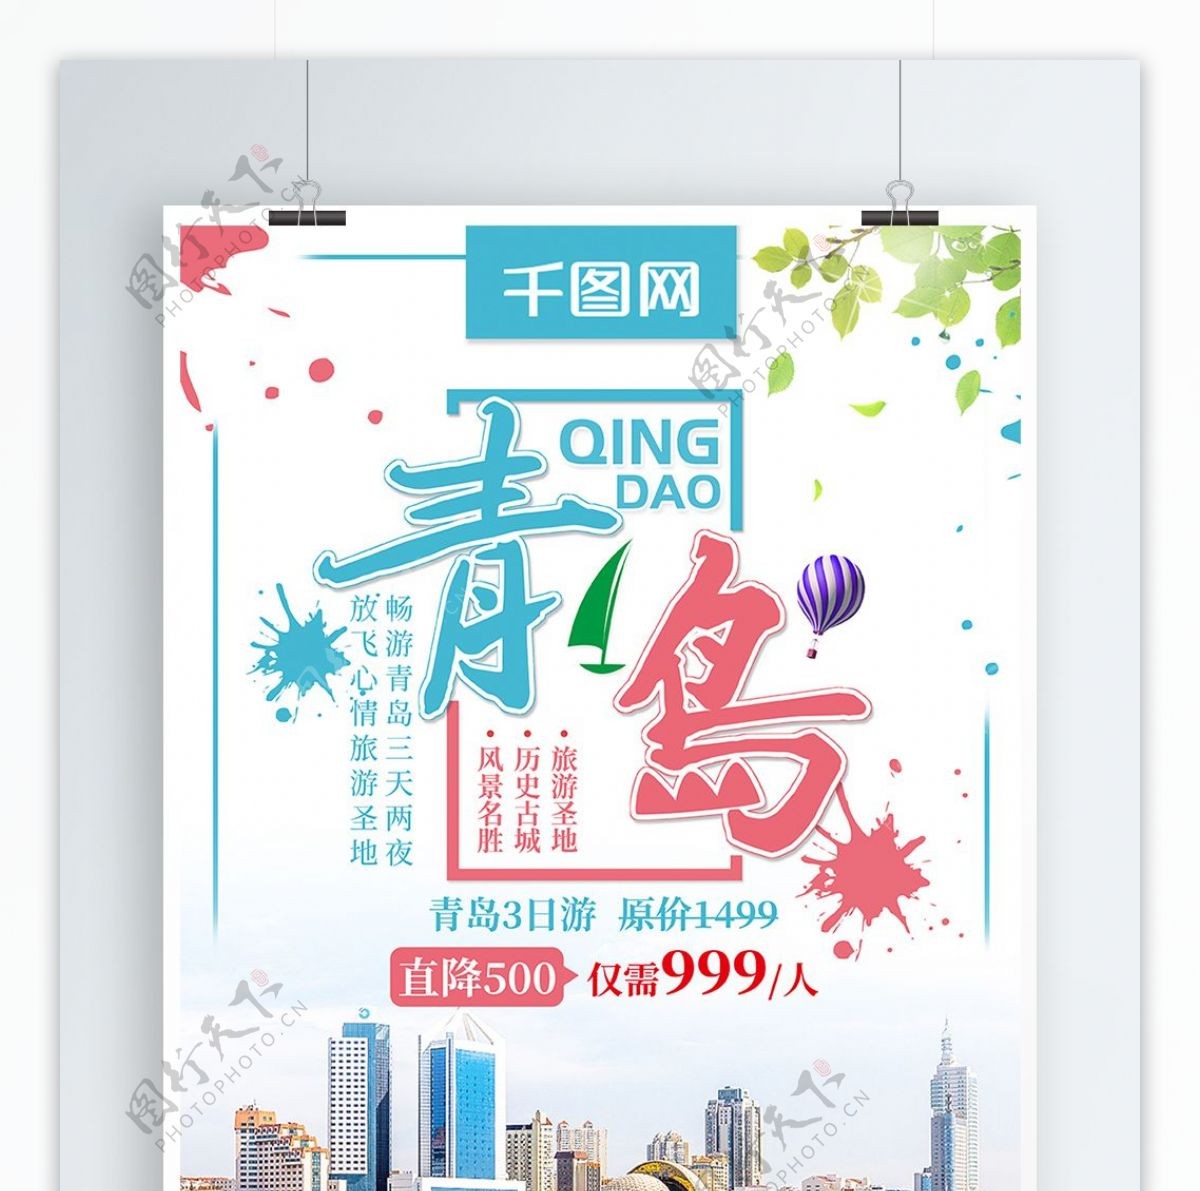 清新青岛旅游青岛之旅旅行社宣传创意海报